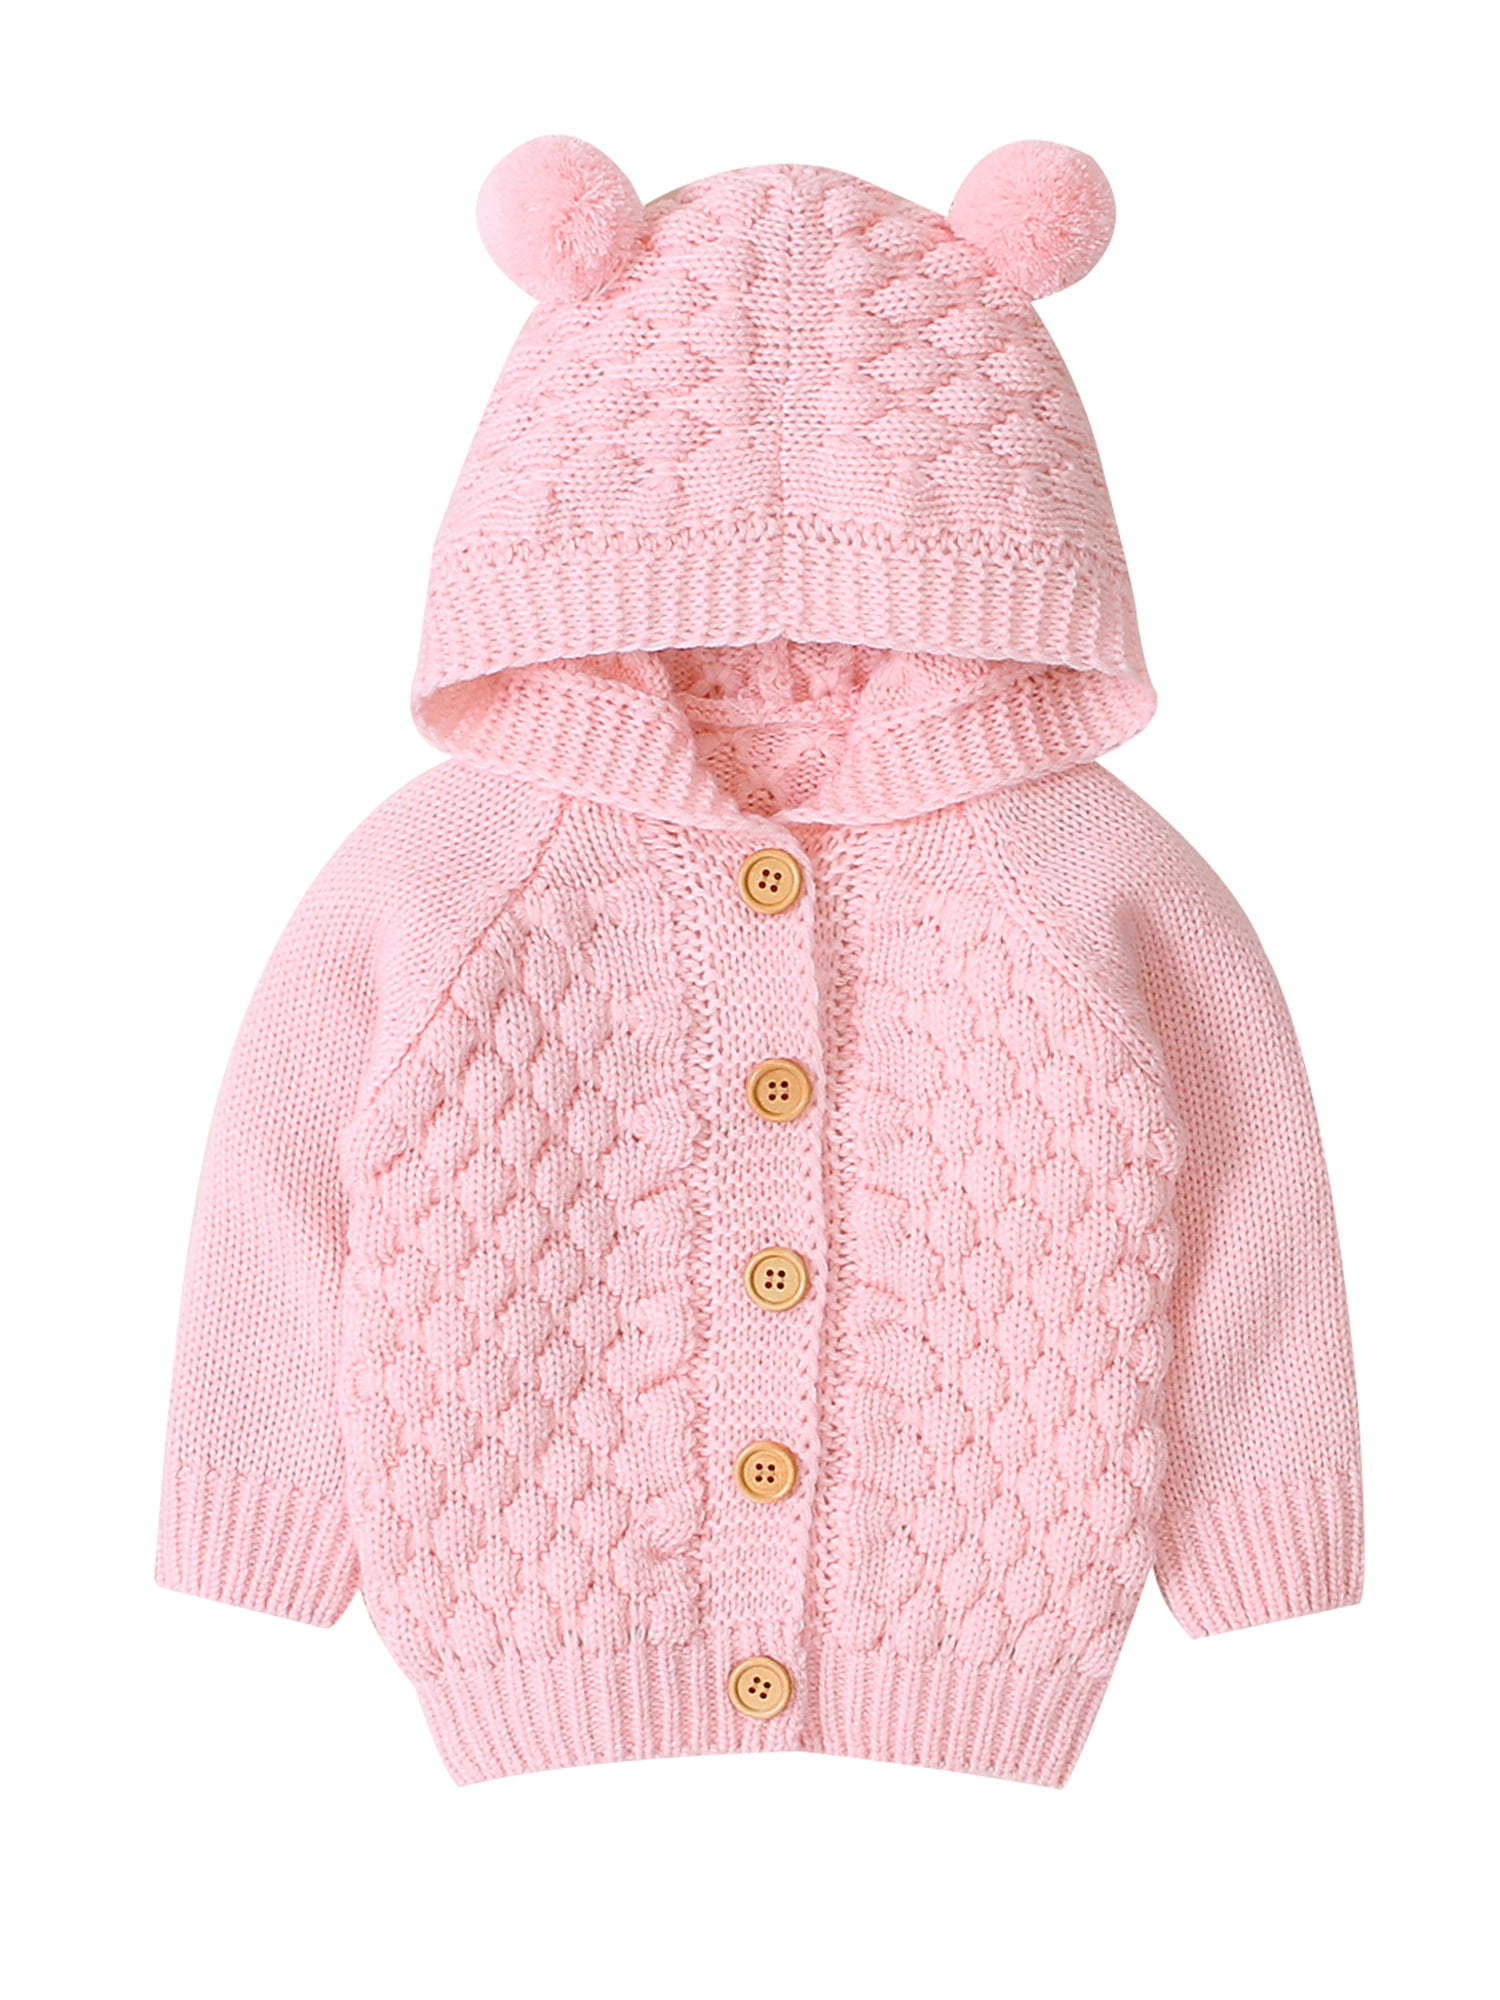 woolen sweater for newborn baby